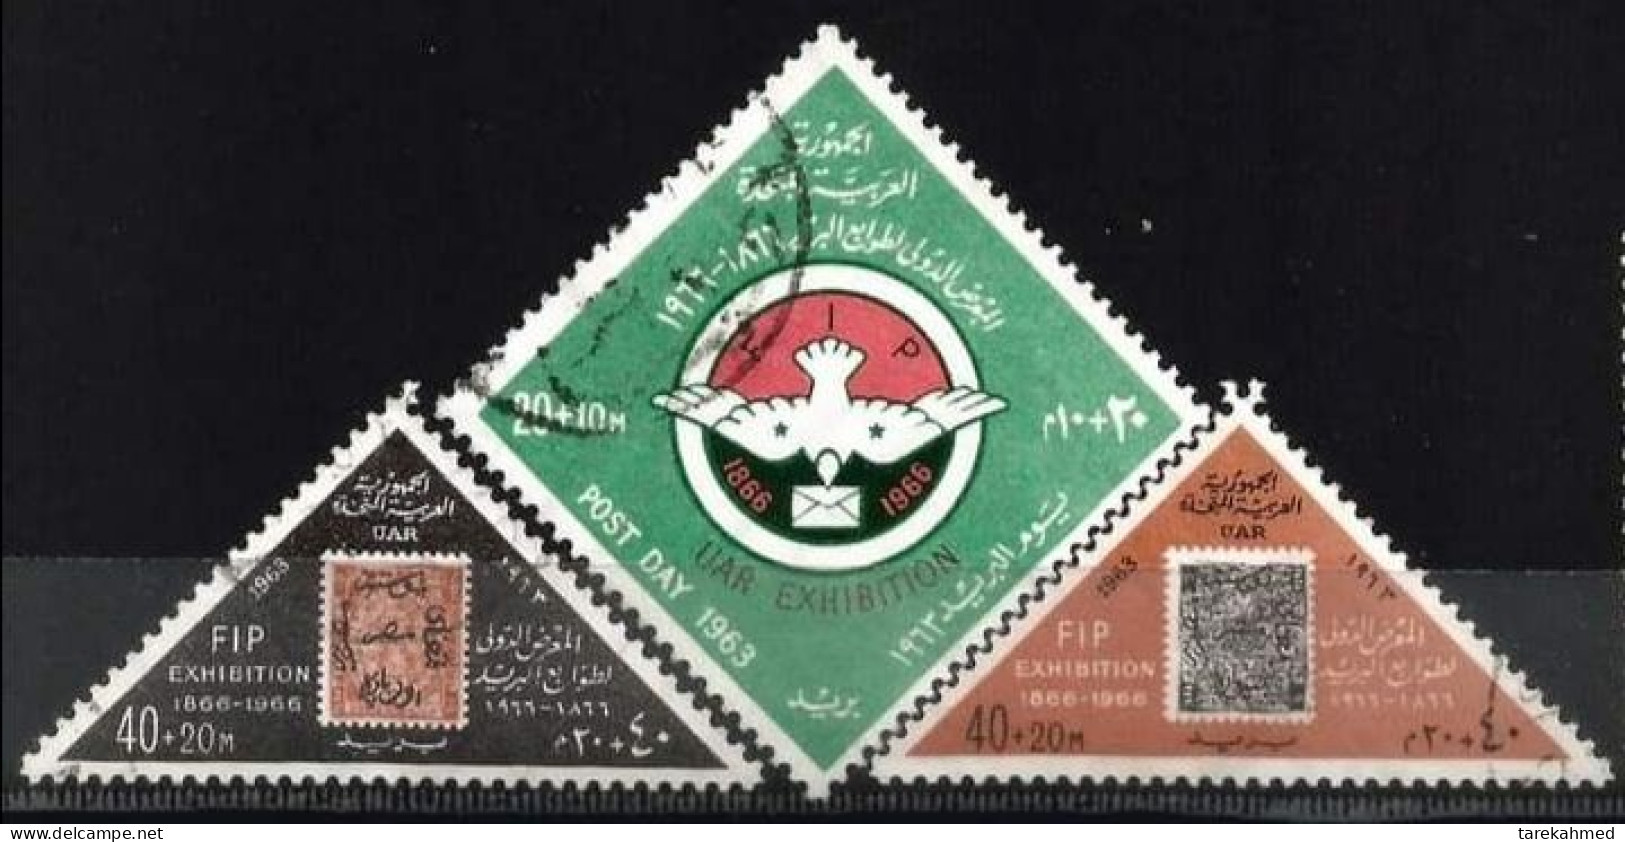 EGYPTE 1963, FIP & UAR Exhibition, YVERT N°555/57, VF - Usati